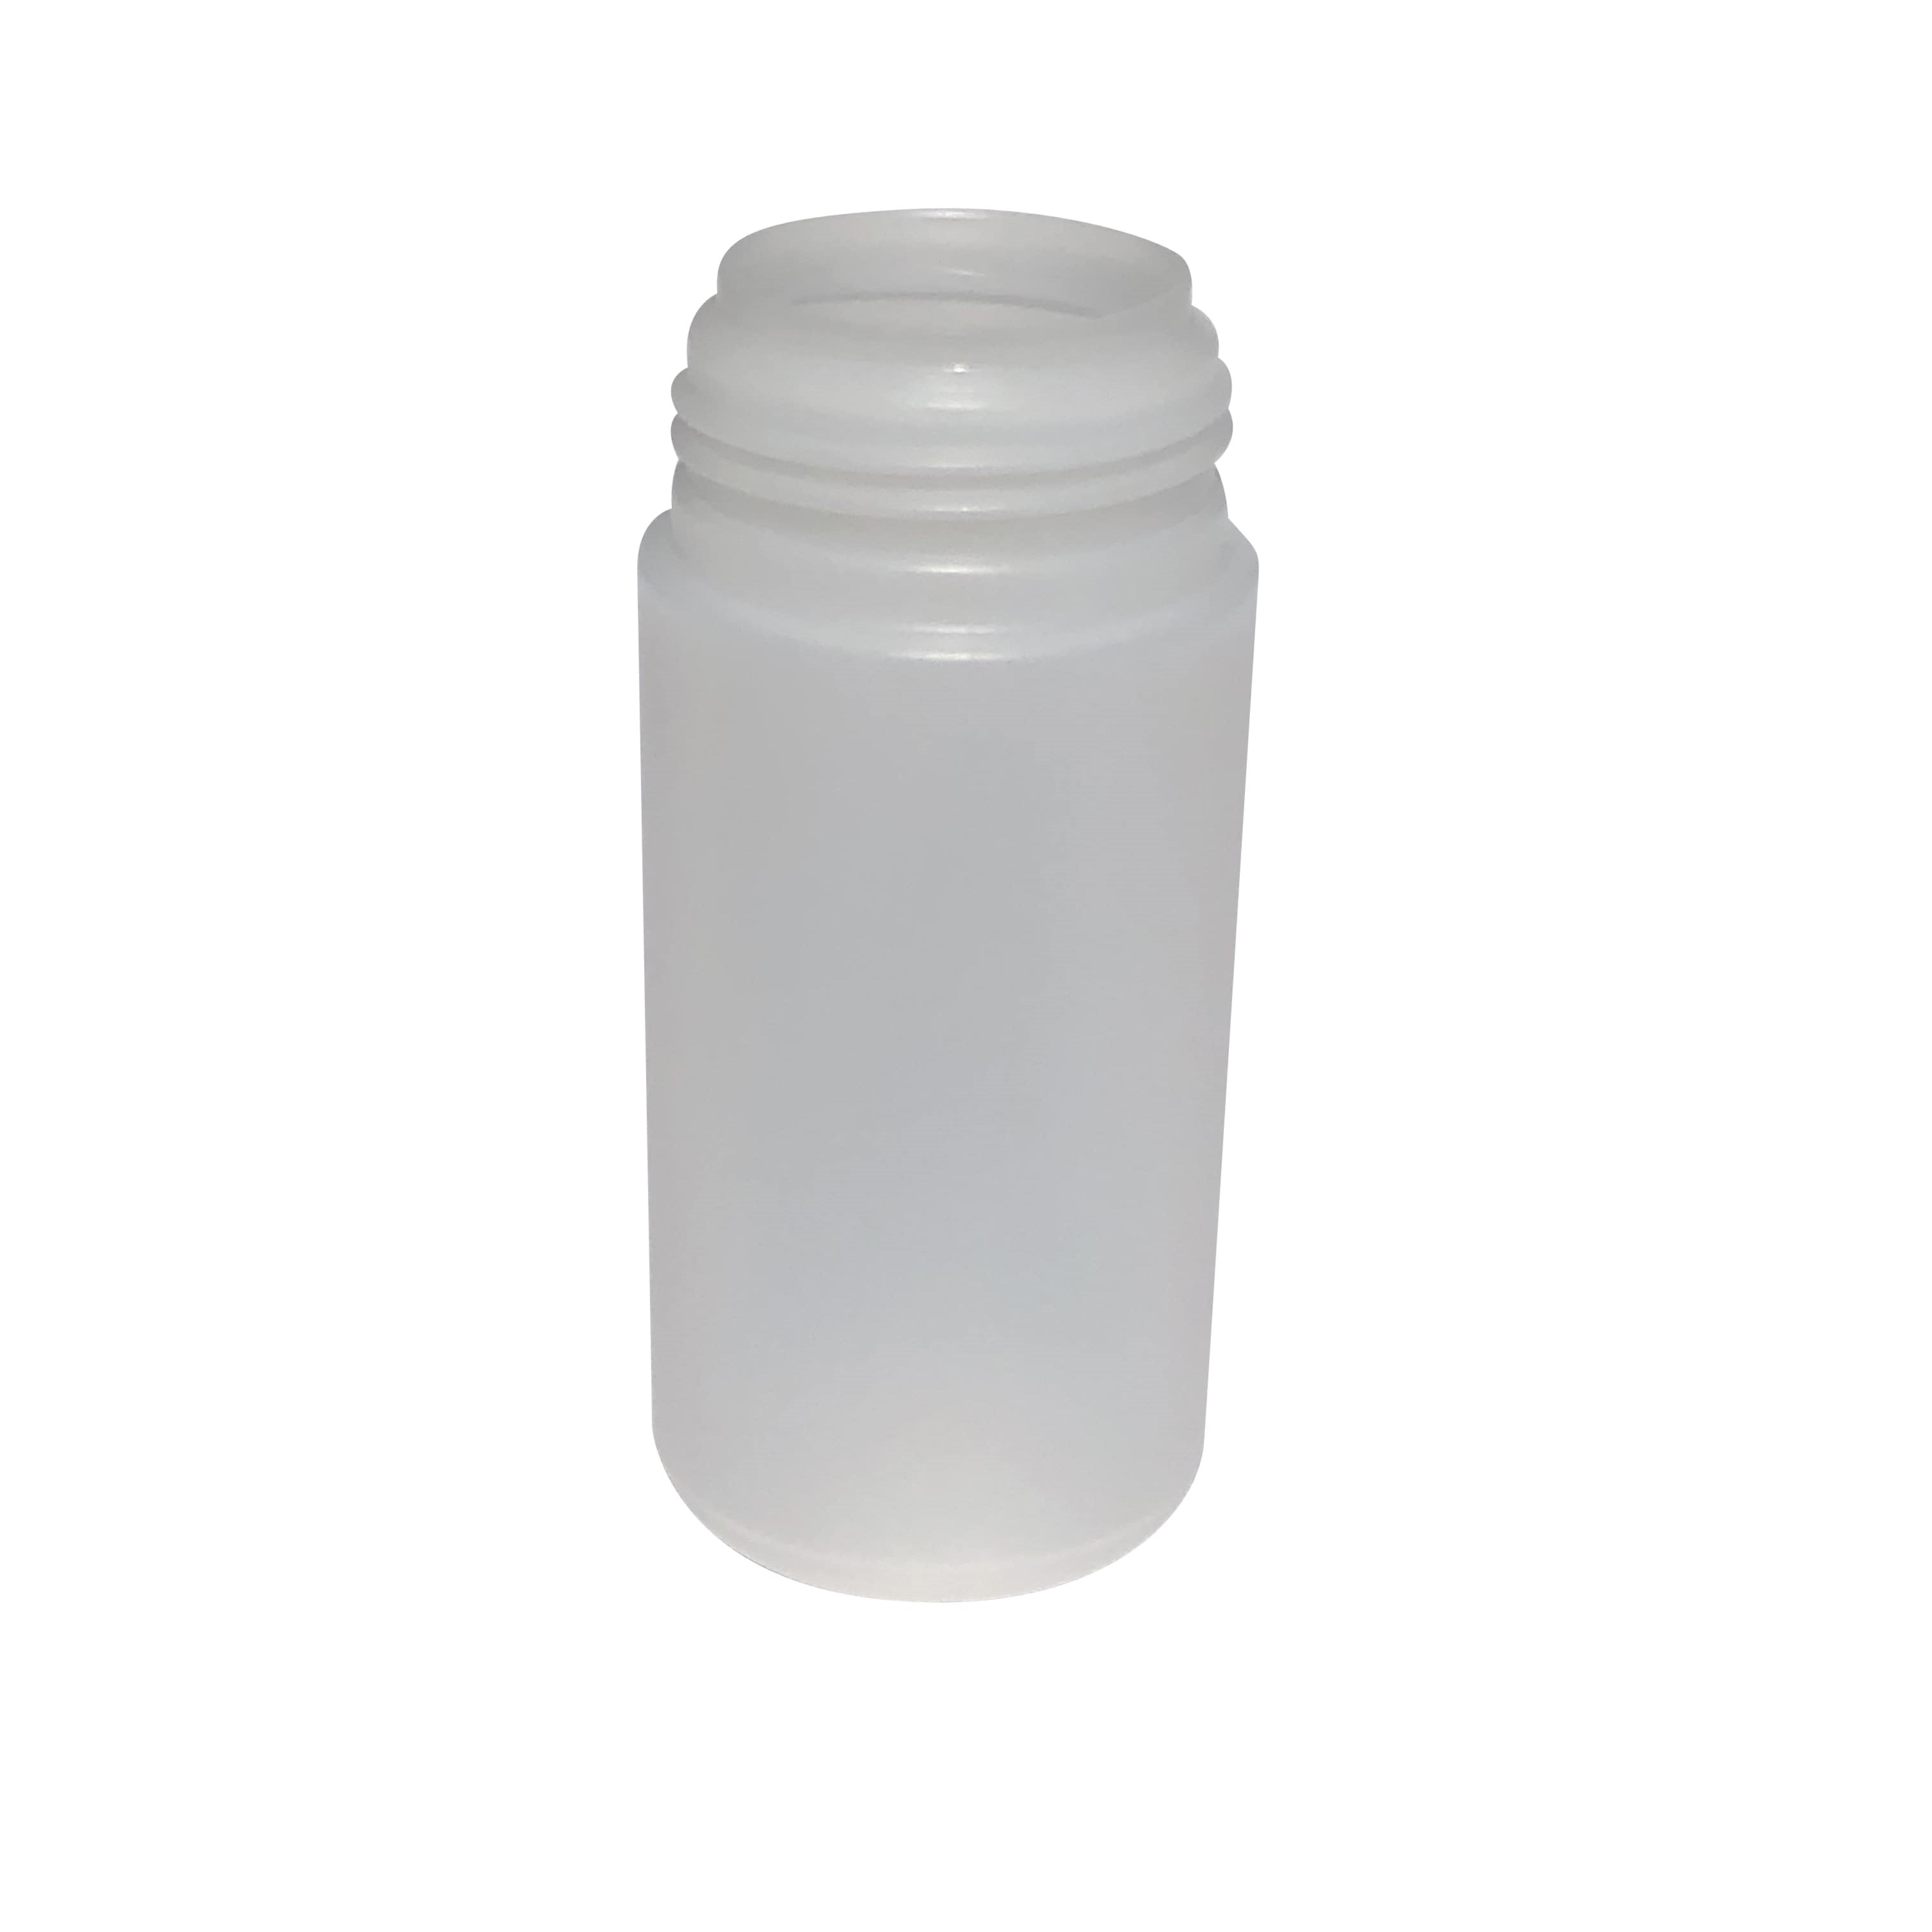 Dispenser 100 ml 'Foamer', PP-plast, hvid, til åbning: Skruelåg